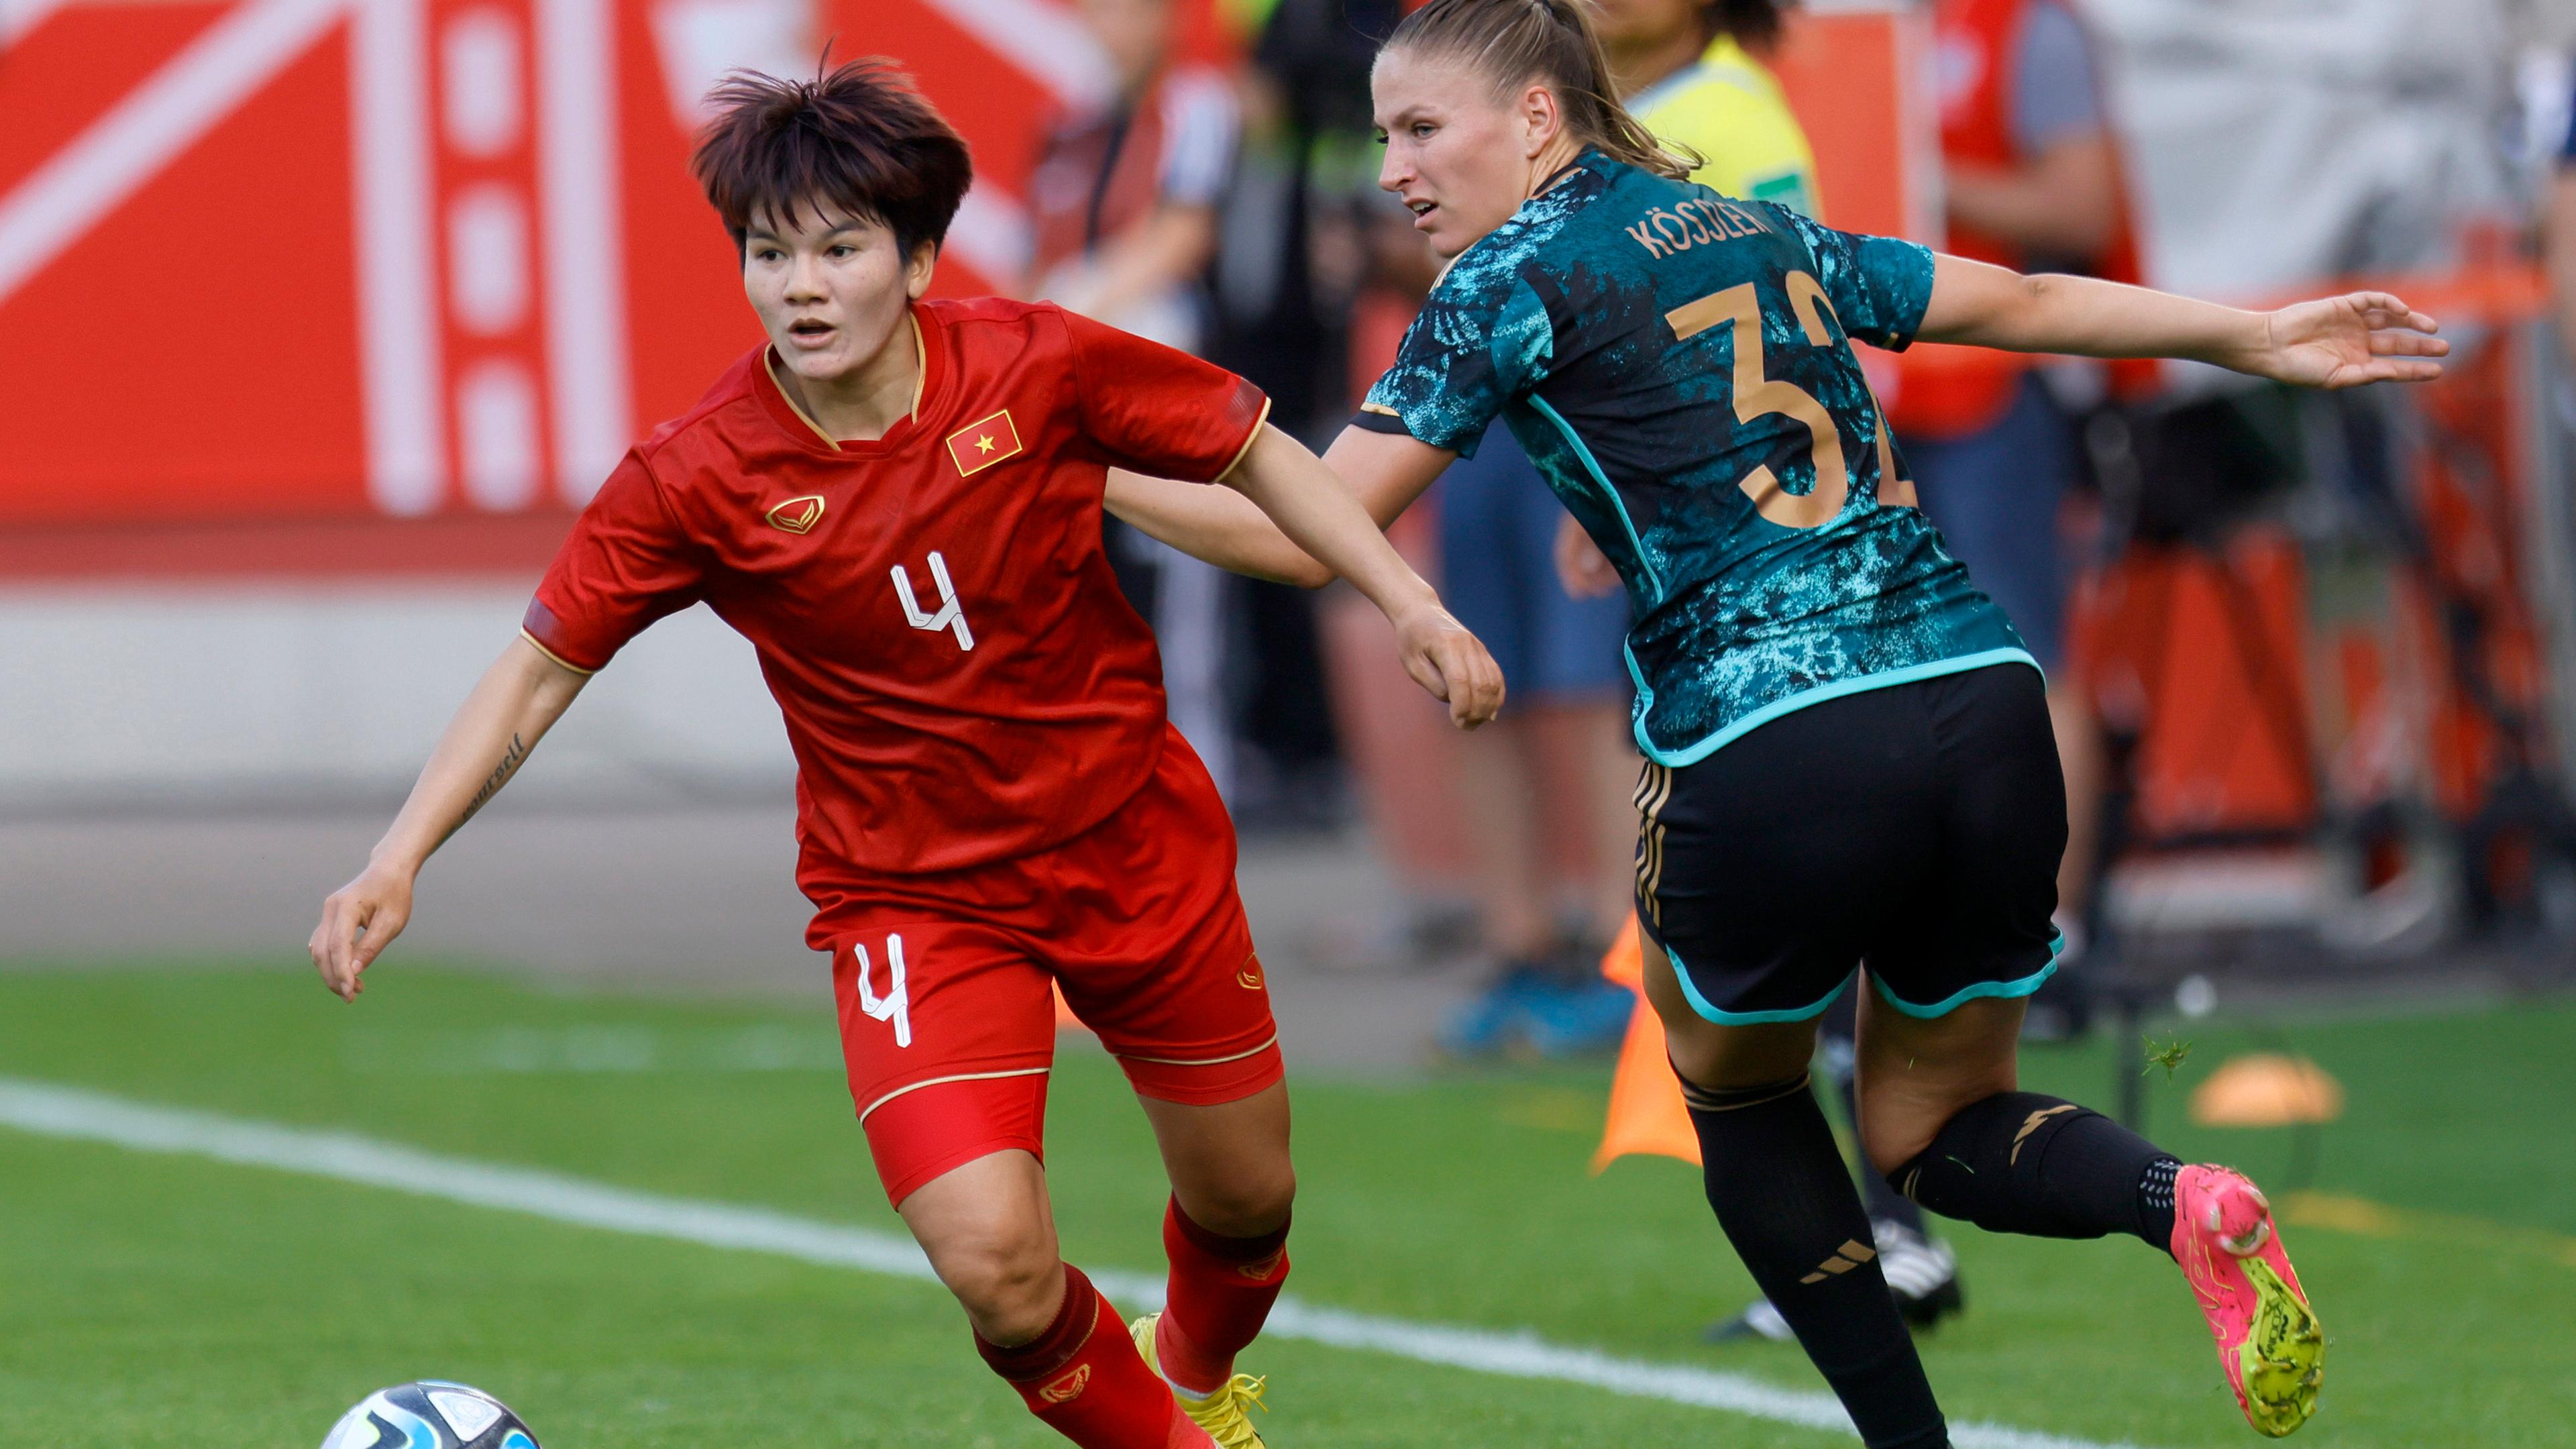 Fußball, Frauen, Länderspiel, Deutschland - Vietnam: Melissa Koessler (r) in Aktion gegen Vietnams Tran Thi Thu (l).